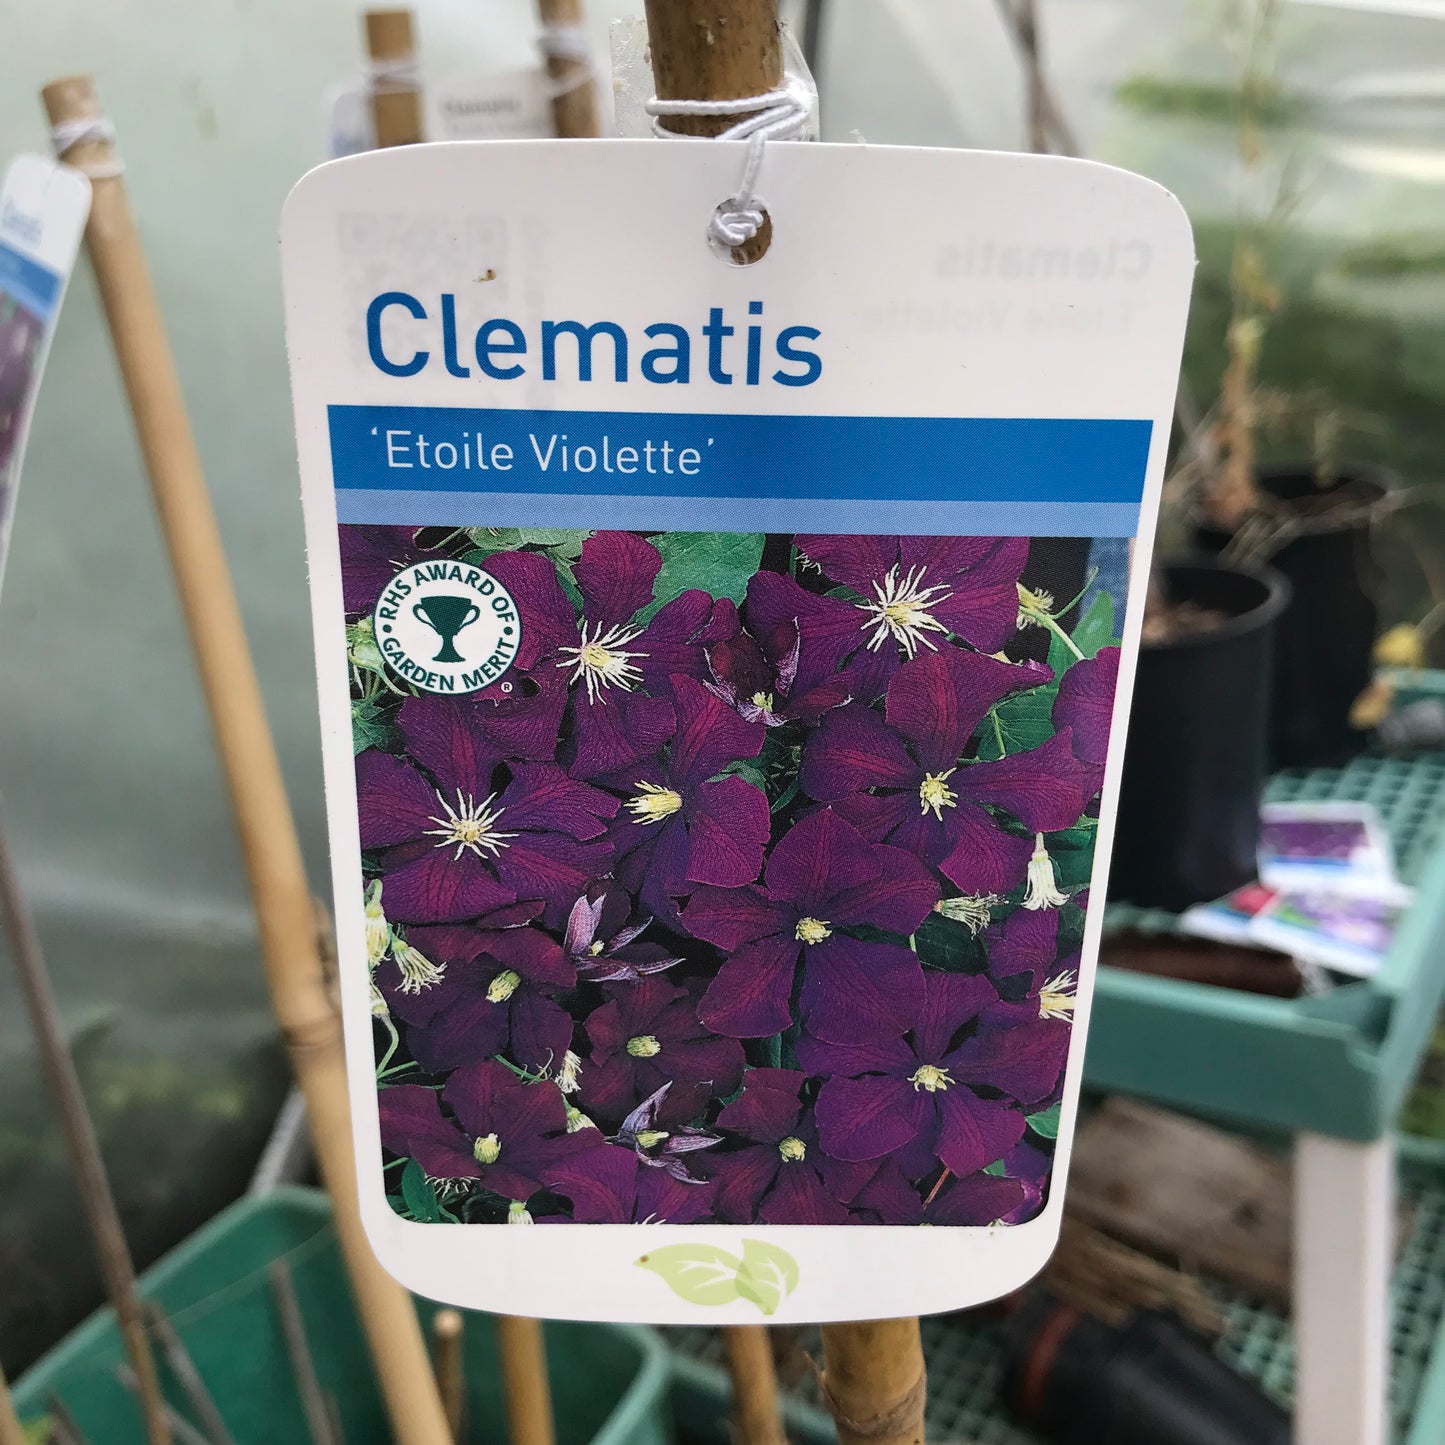 Clematis viticella Etoile violette Large 2L Climber Plant